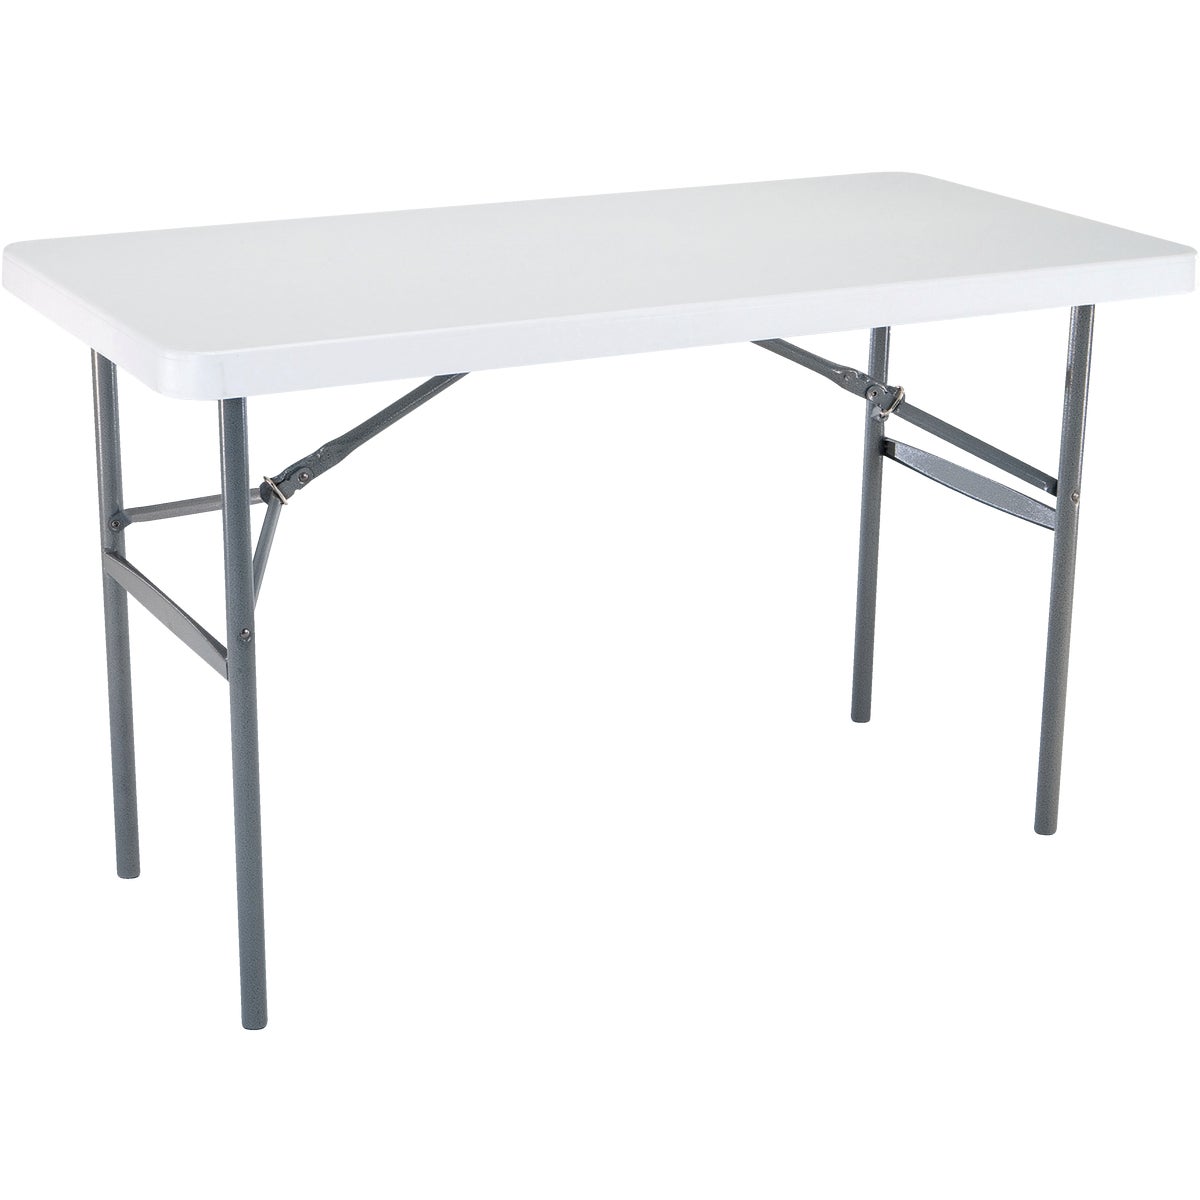 Lifetime 4 Ft. x 24 In. White Granite Light Commercial Folding Table